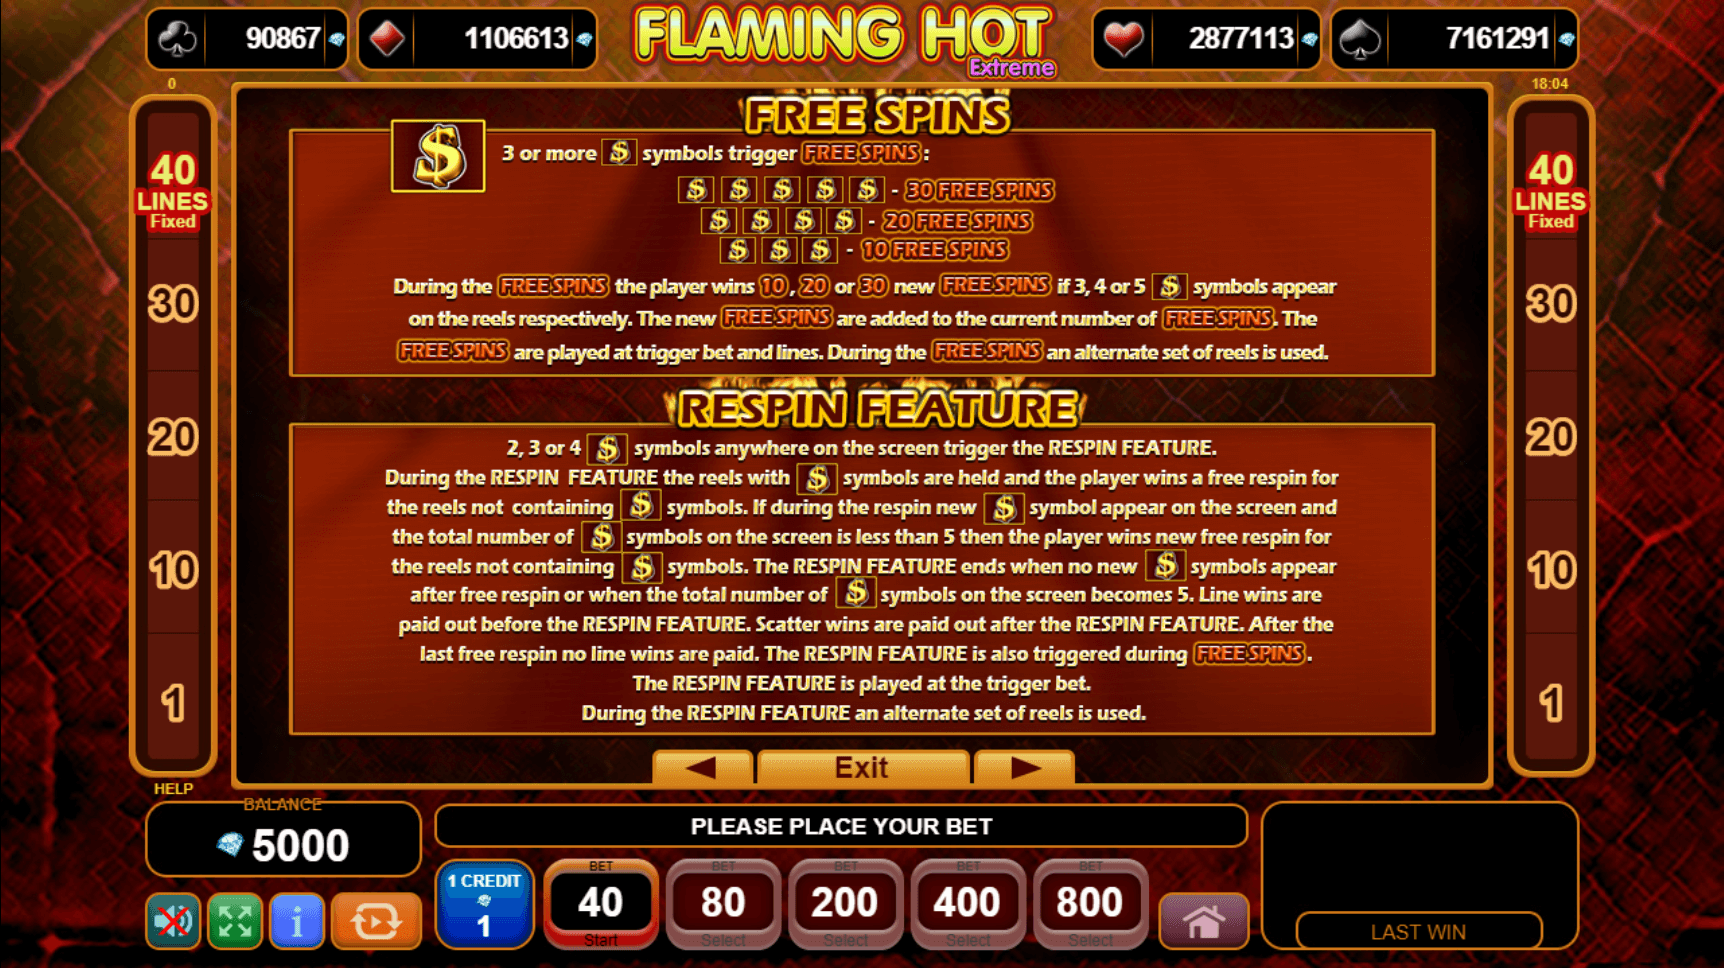 Flaming hot slot 40